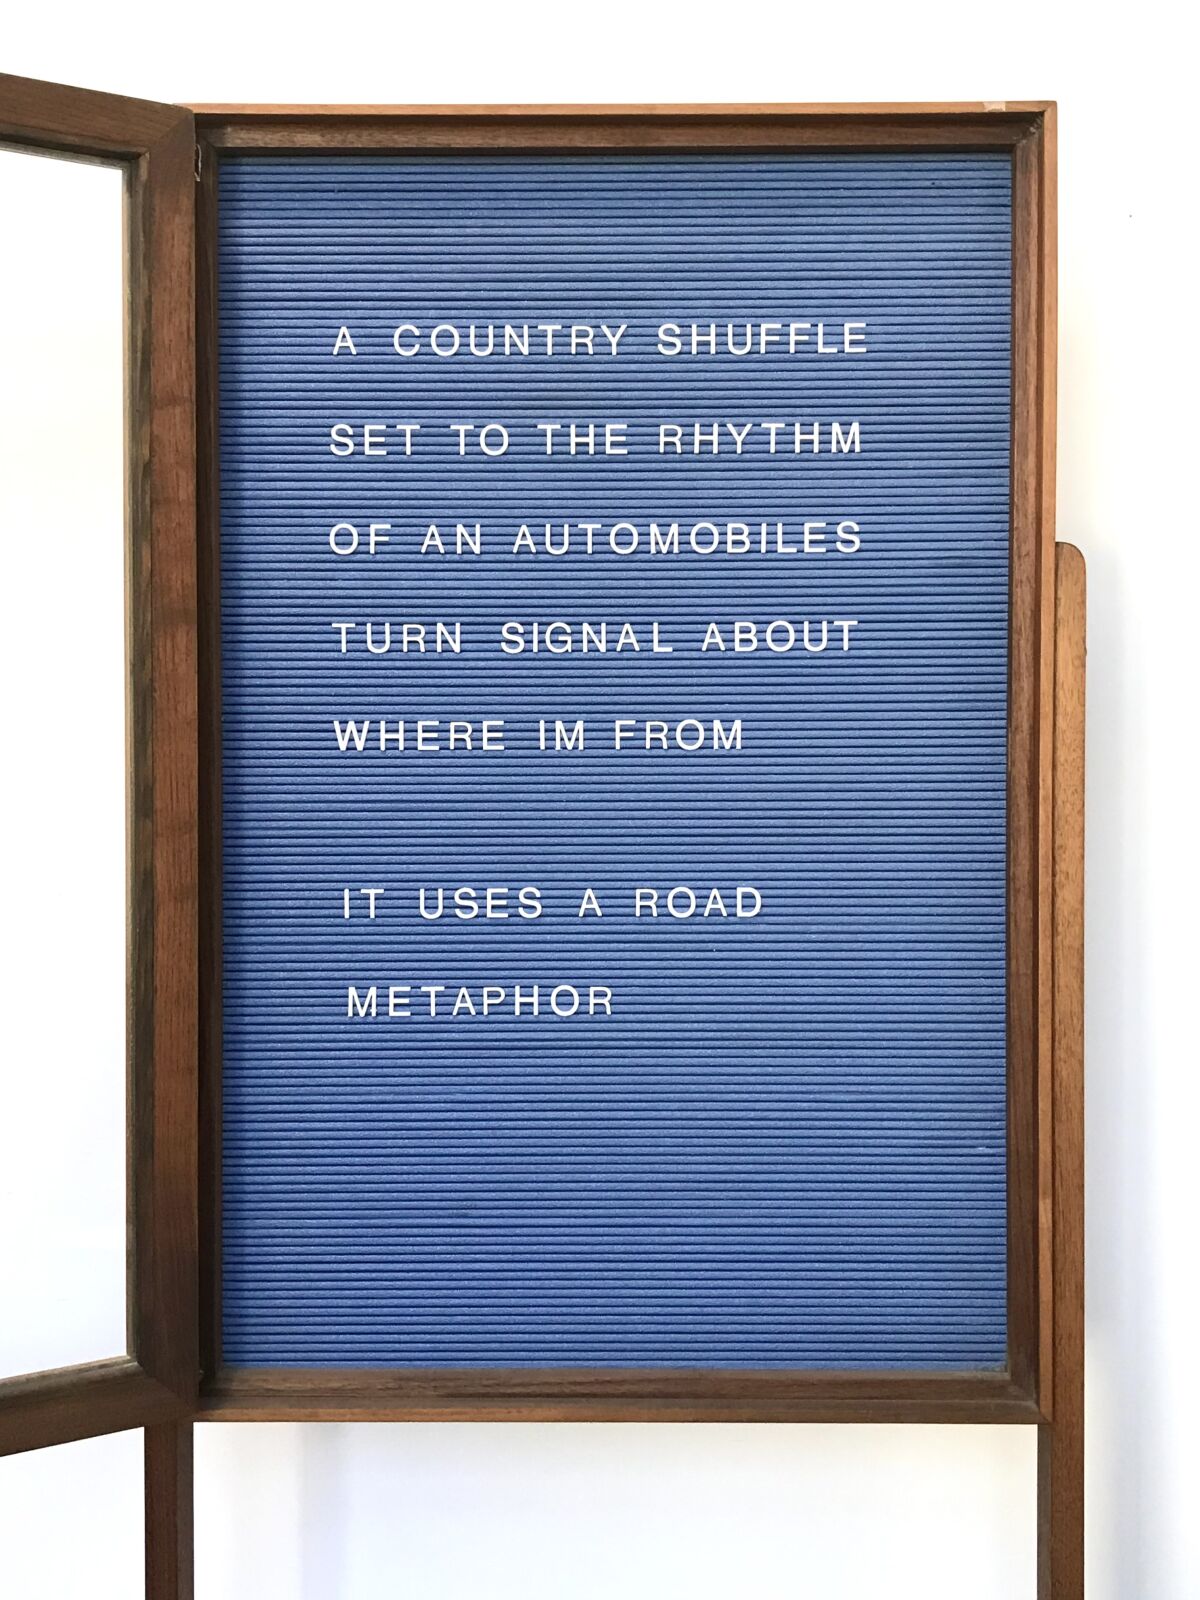 A poem written on a notice board